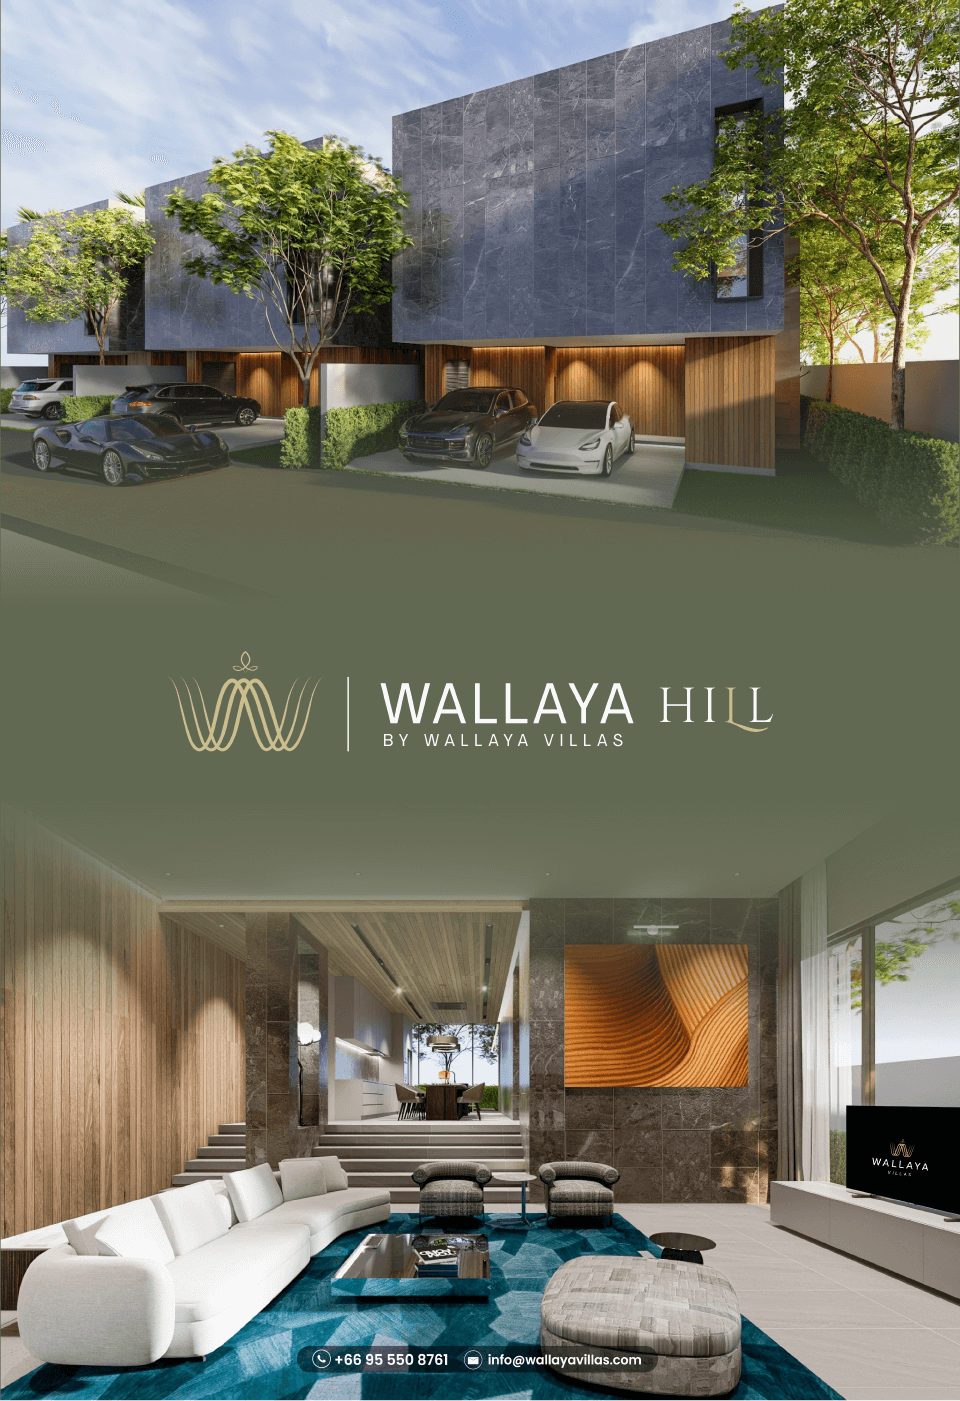 wallaya hill ads mobile